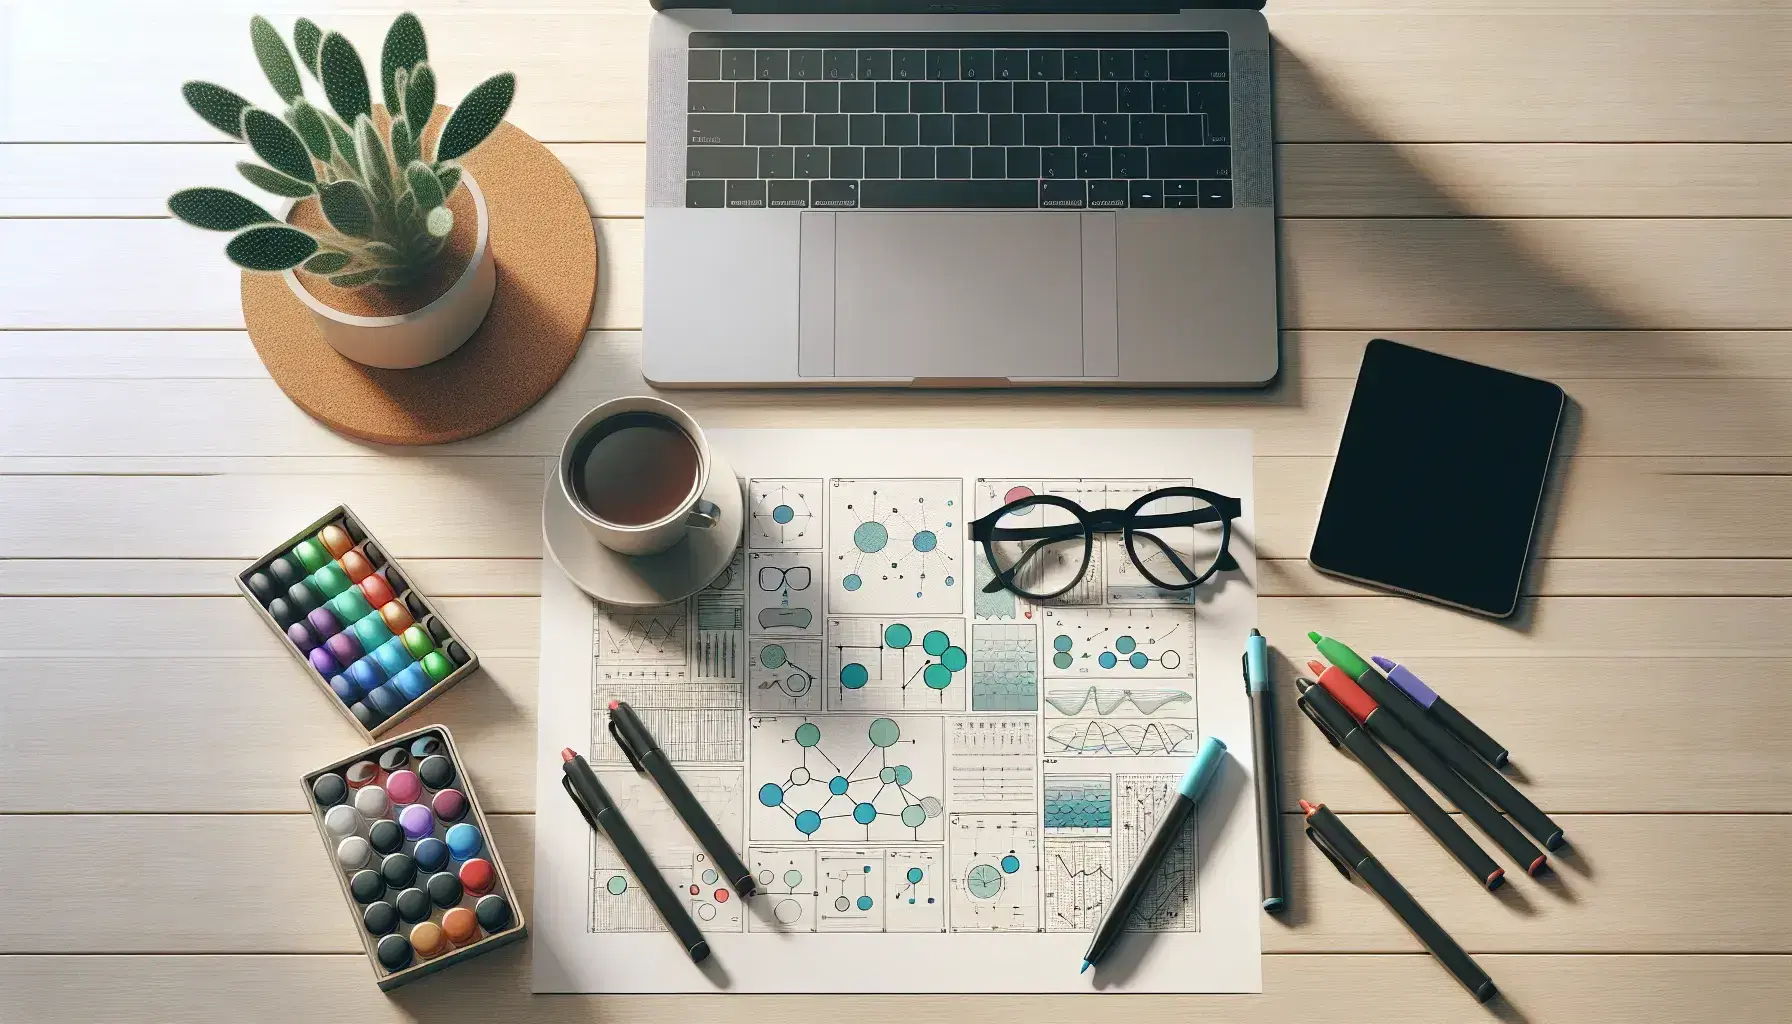 Escritorio de oficina con laptop abierta, hojas con diagramas geométricos, marcadores de colores, gafas, taza de café y cactus.